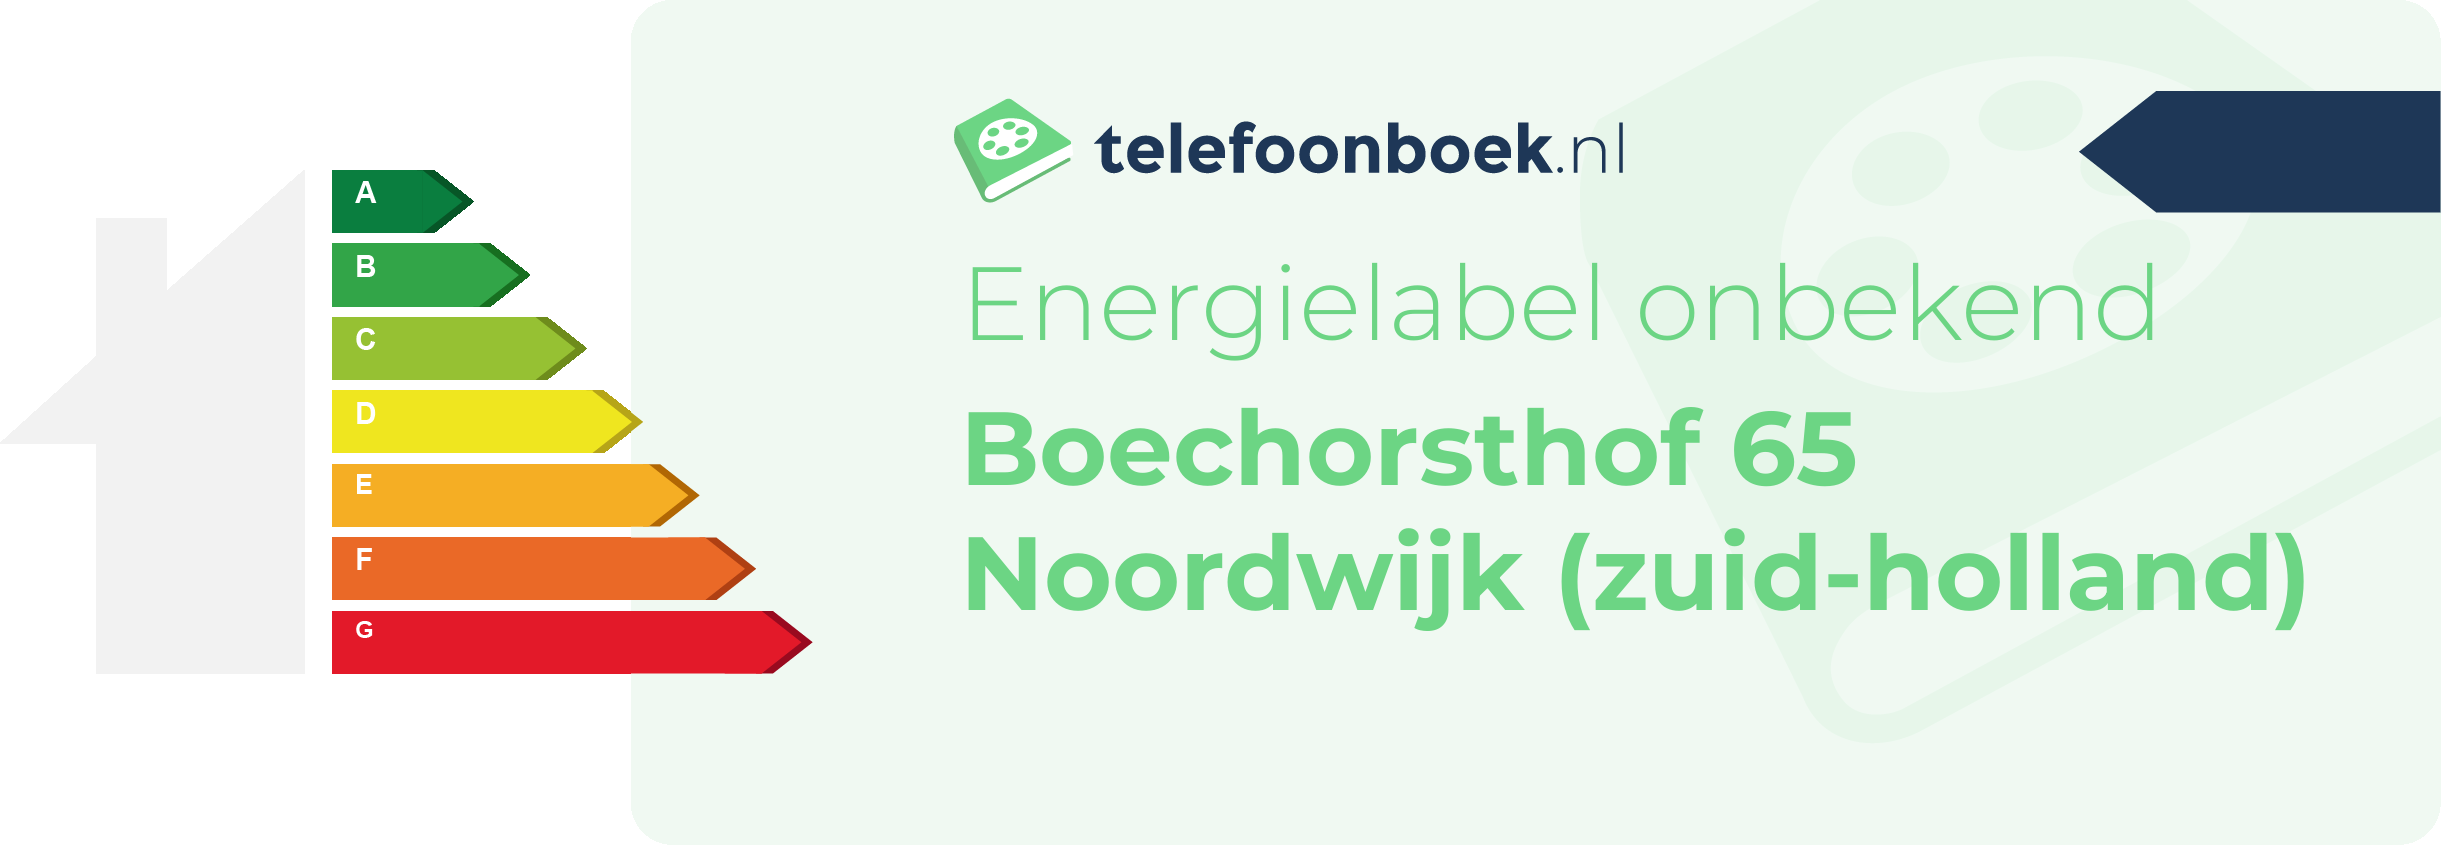 Energielabel Boechorsthof 65 Noordwijk (Zuid-Holland)